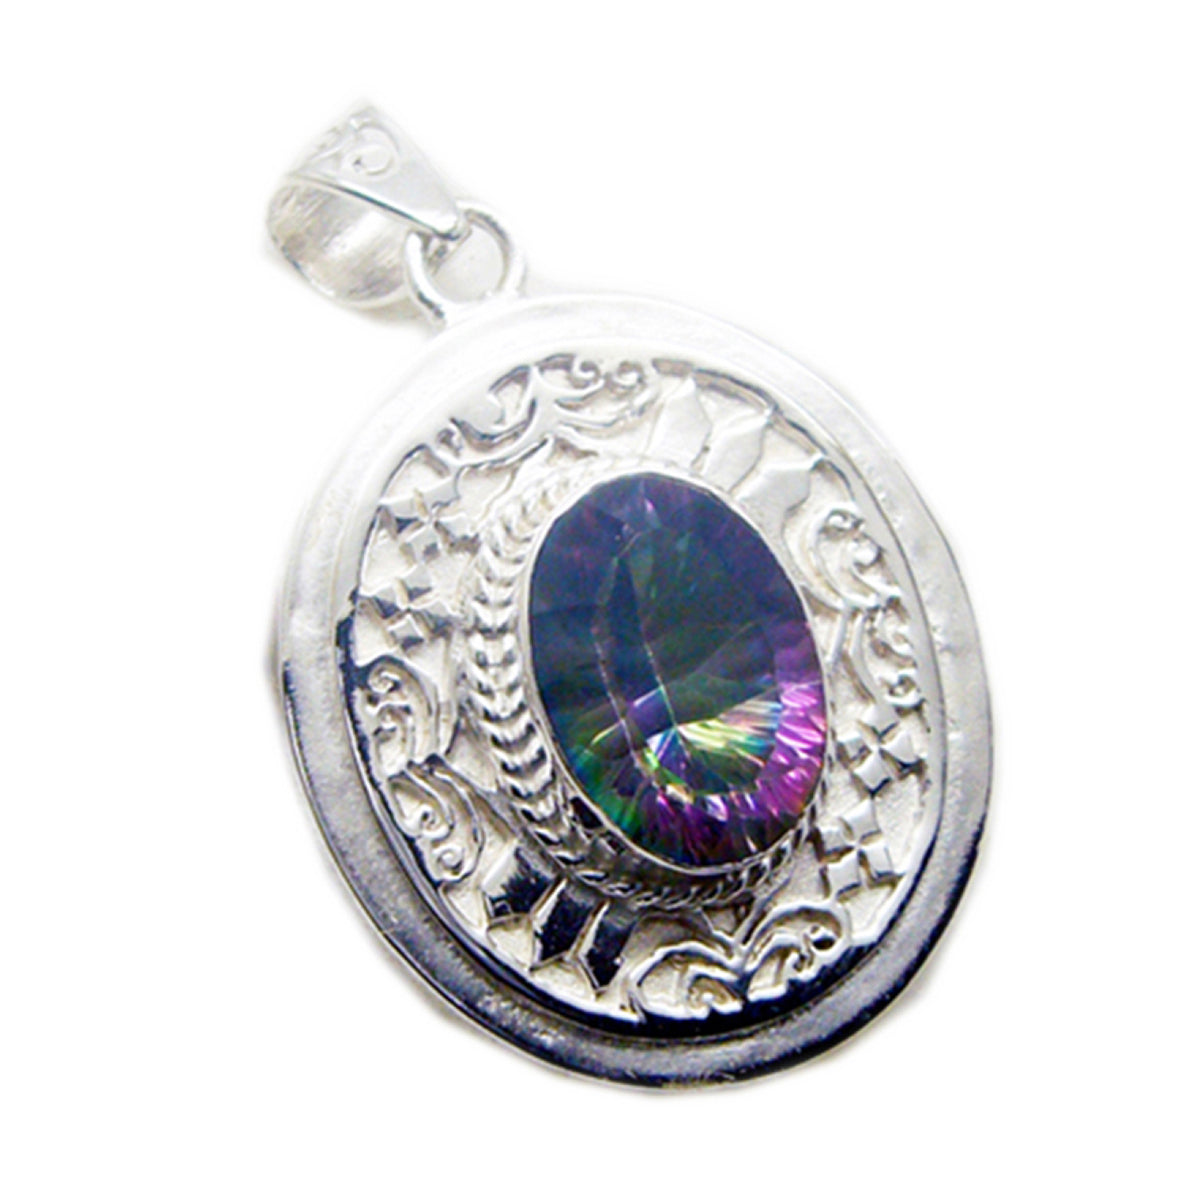 Riyo – pierres précieuses ovales à facettes multicolores, quartz mystique, pendentif en argent, cadeau de fiançailles